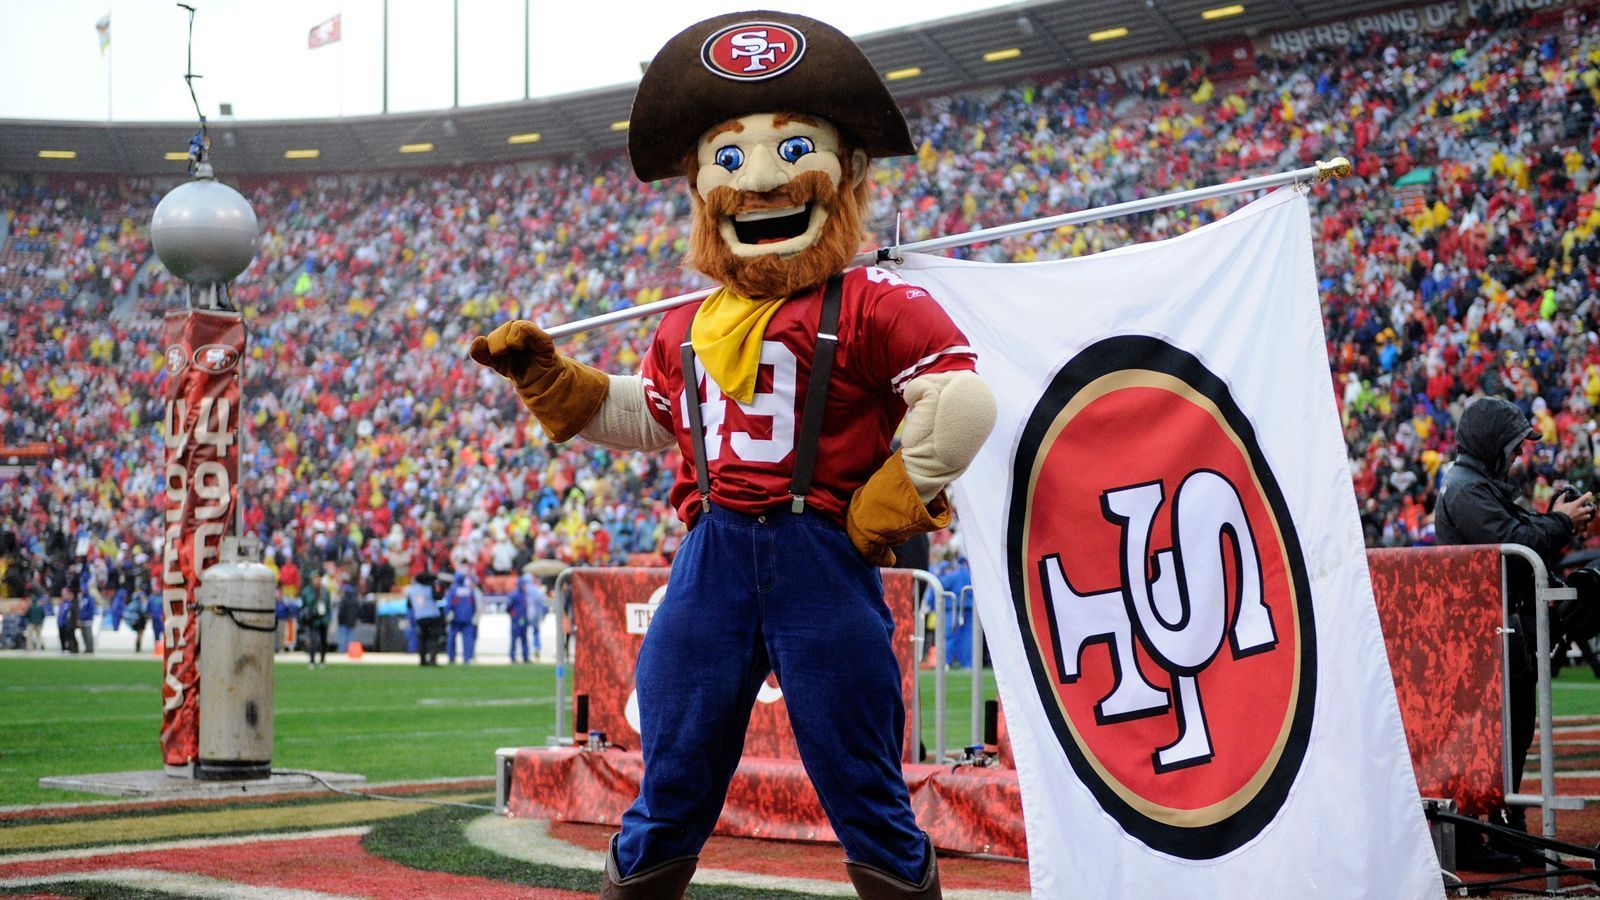 
                <strong>San Francisco 49ers: Sourdough Sam</strong><br>
                Sourdough Sam erinnert an die Zeit des Goldrausches in Kalifornien. Er ist einer dieser Glücksritter, die 1849 an die Westküste reisten, um reich zu werden. Reich wurde Sam nicht, sein Glück hat er bei den 49ers dennoch gefunden. 
              